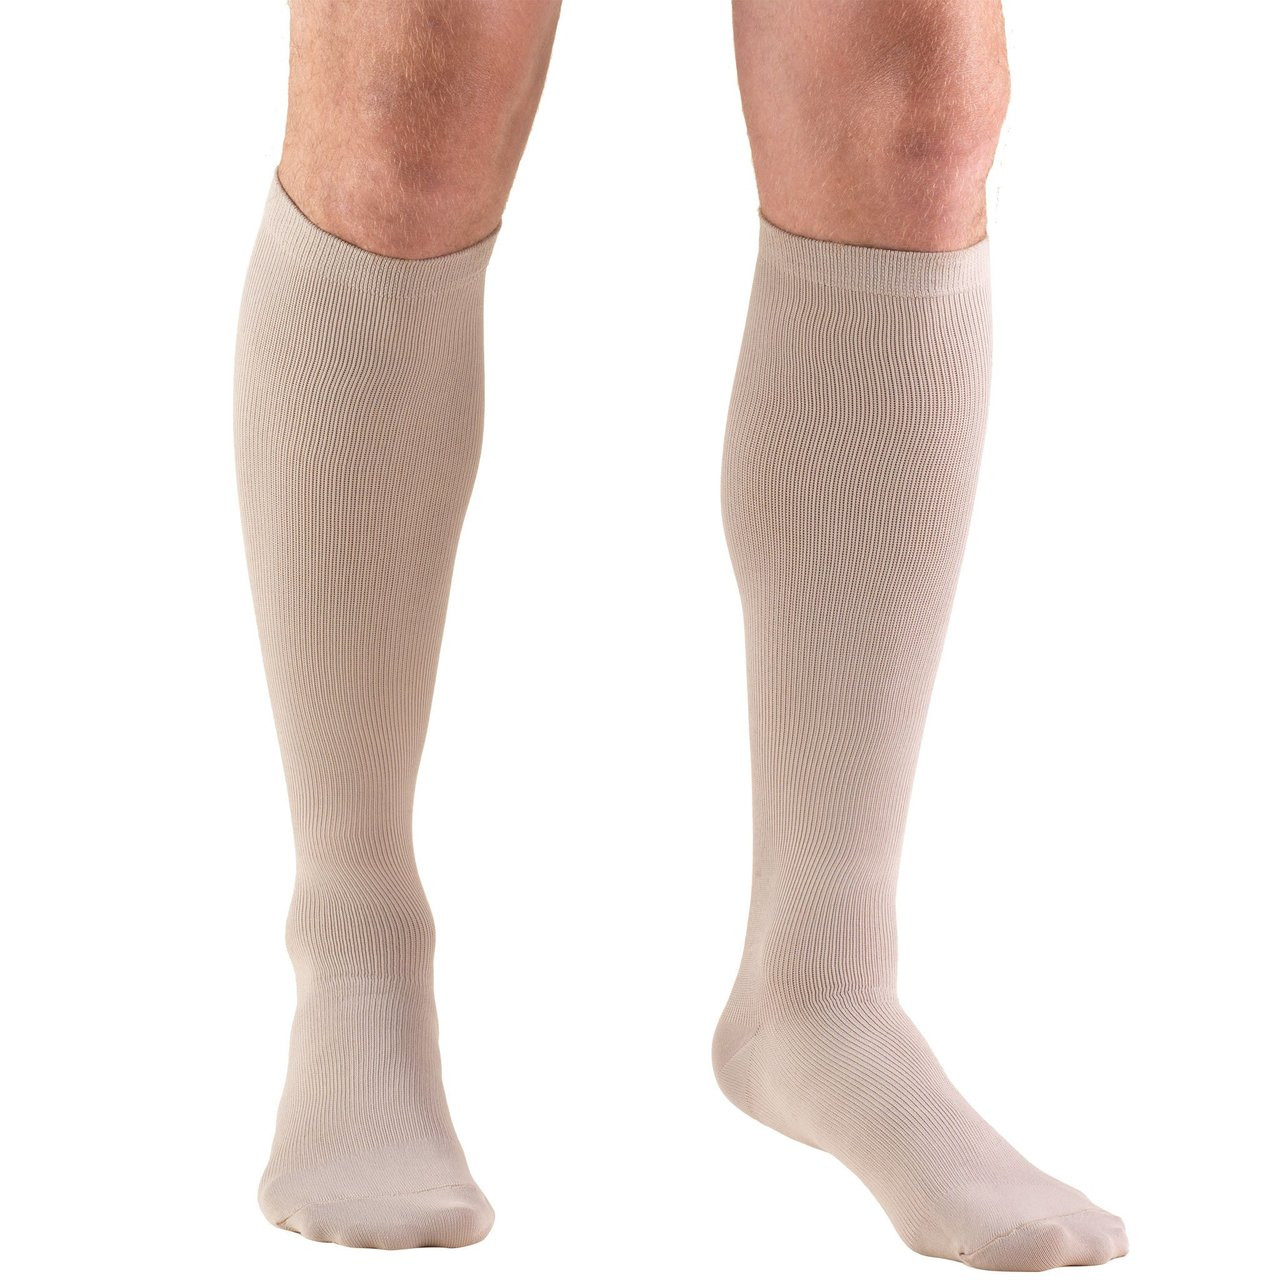 MEN'S DRESS Socks 8-15mmHg Knee-high, tan S-M-L-XL (1942TN)